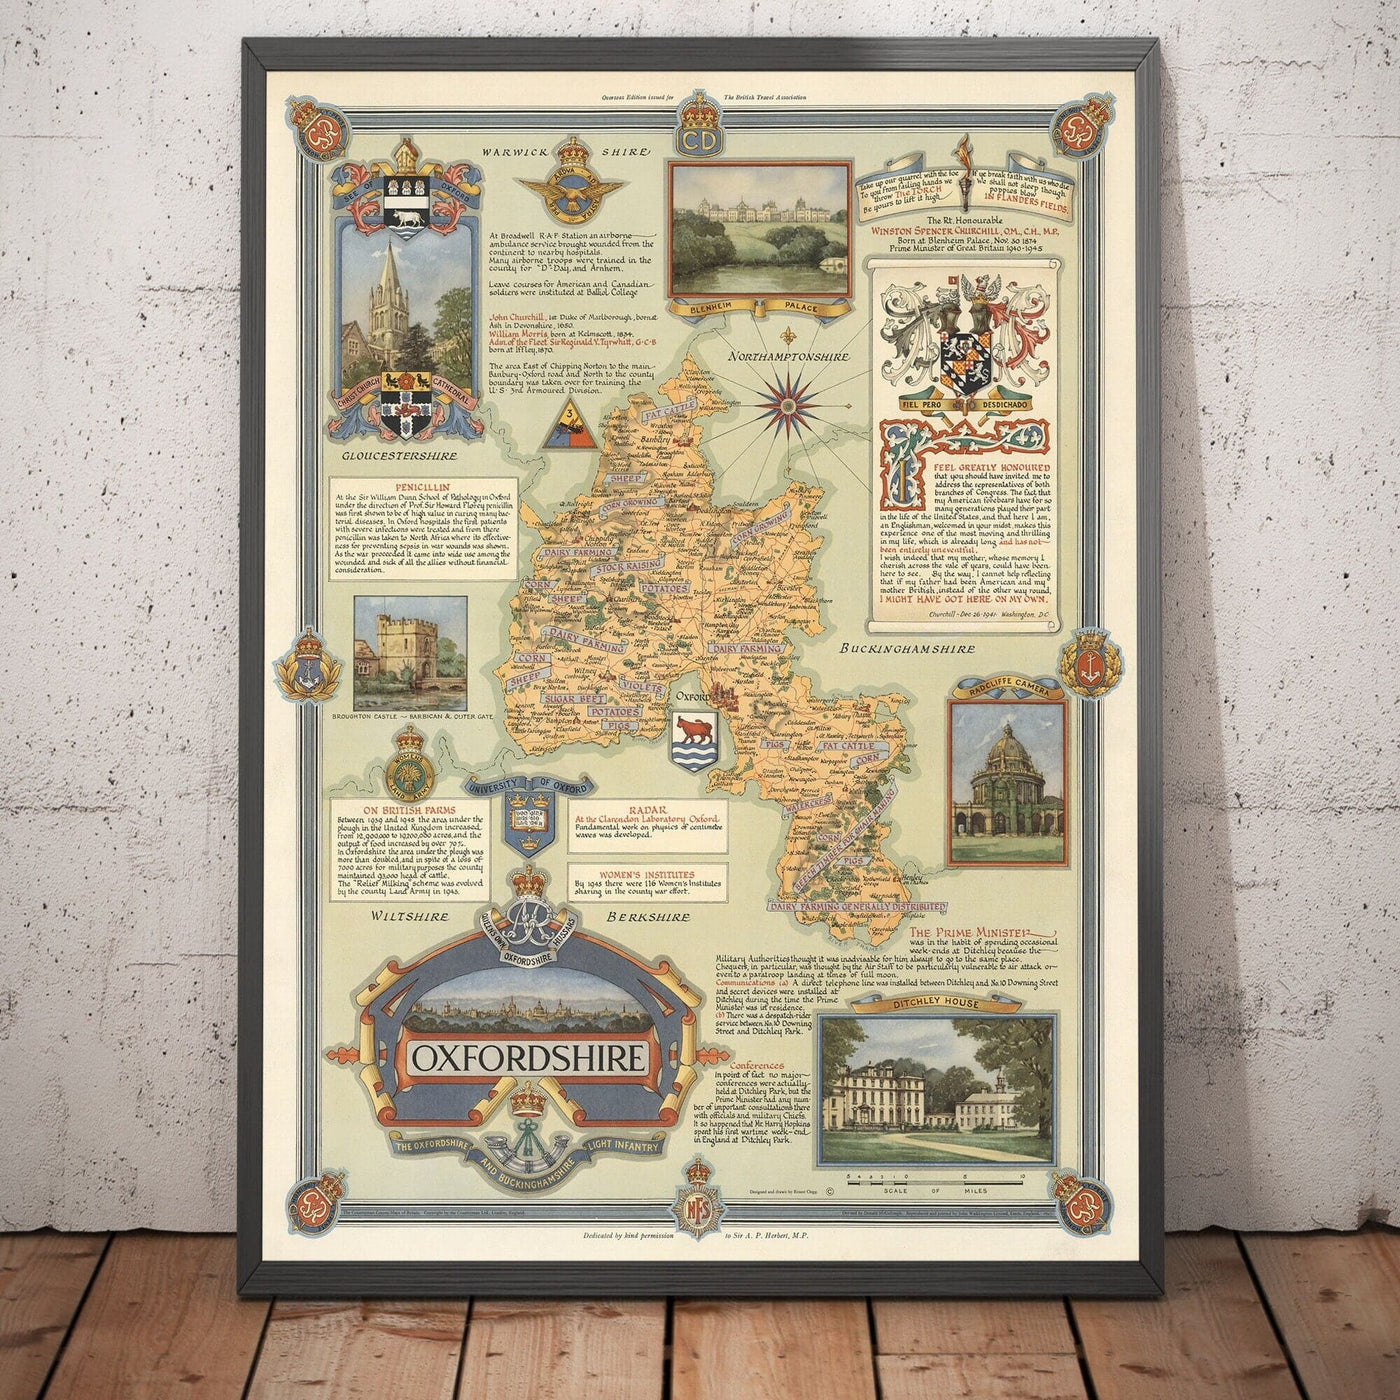 Alte Karte von Oxfordshire von Ernest Clegg, 1947 - Universität Oxford, Blenheim Palace, Churchill, Bicester, Banbury